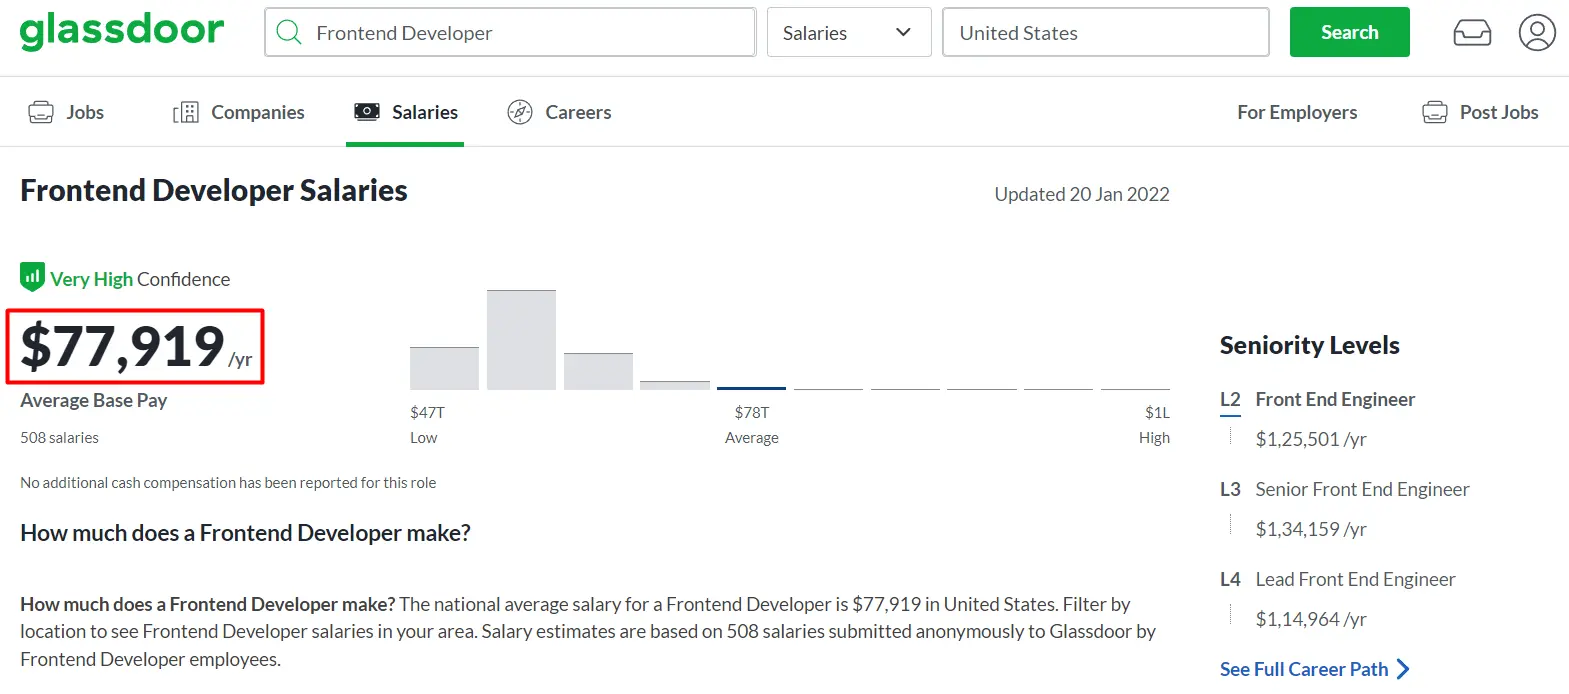 Frontend developer salary range according to Glassdoor